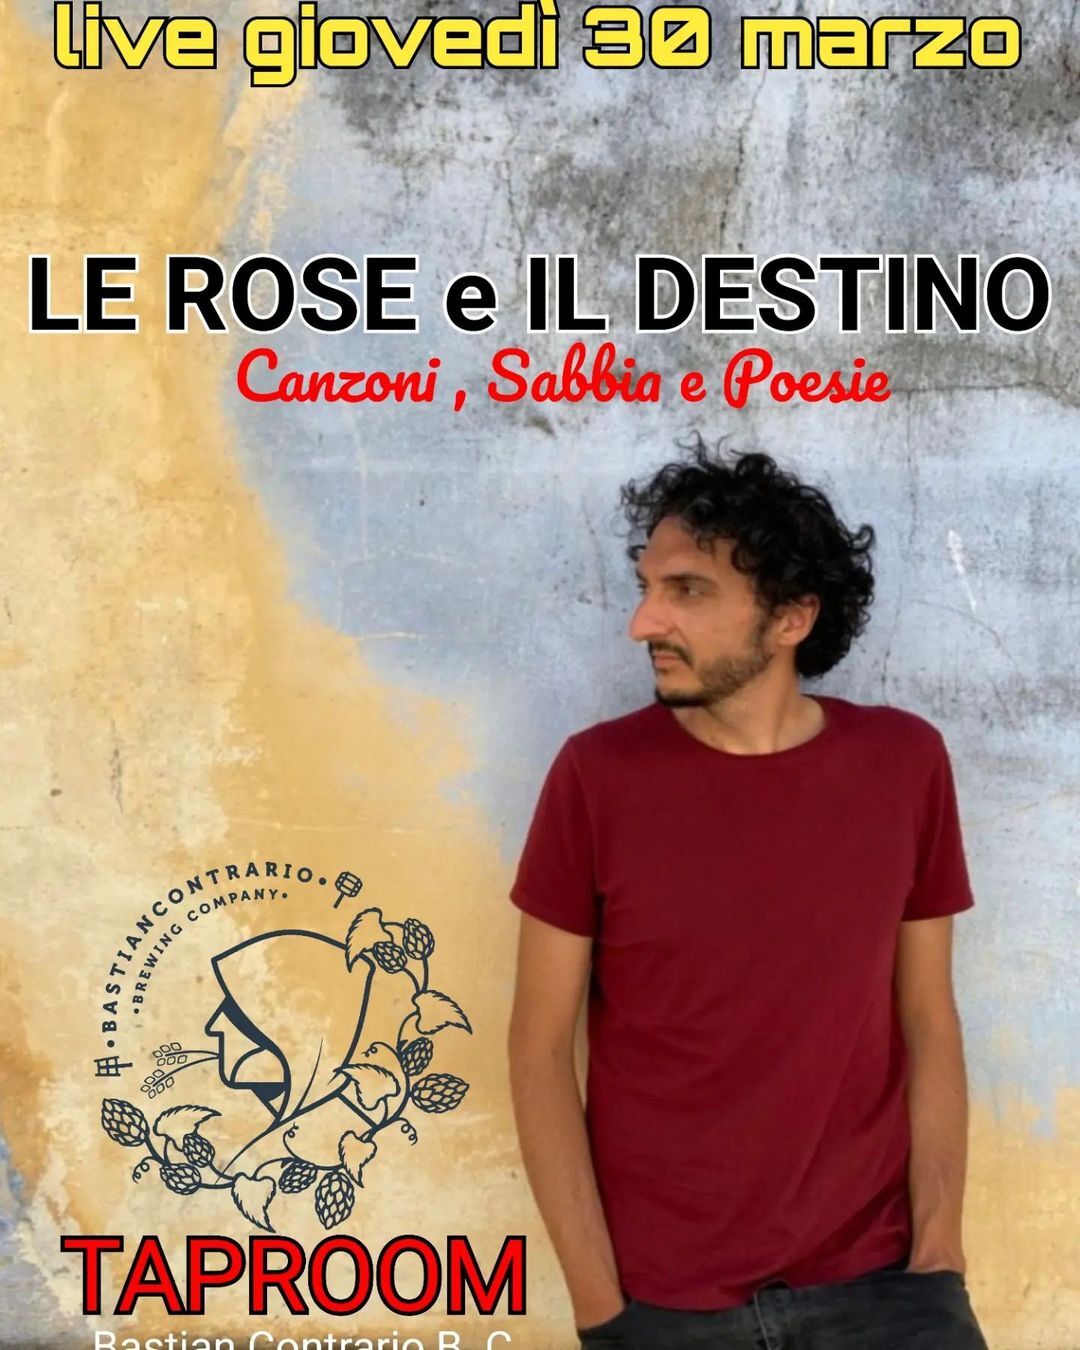 Al  Bastian Contrario Brewing Company giovedì è live music con  "Le rose e il destino"